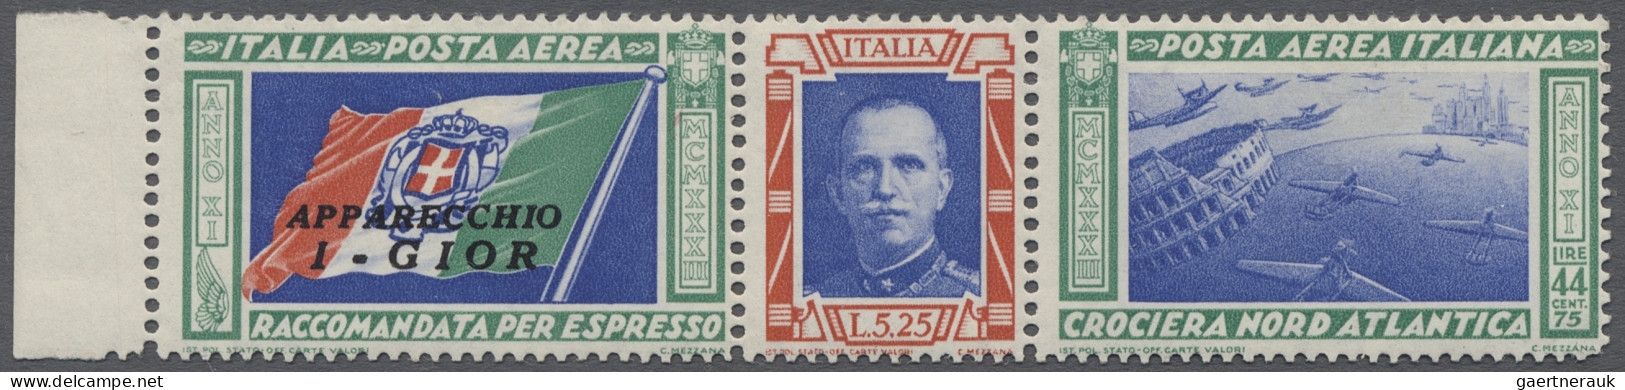 Italy: 1862/1944, beachtenswerte überwiegend postfrisch oder ungebraucht zusamme